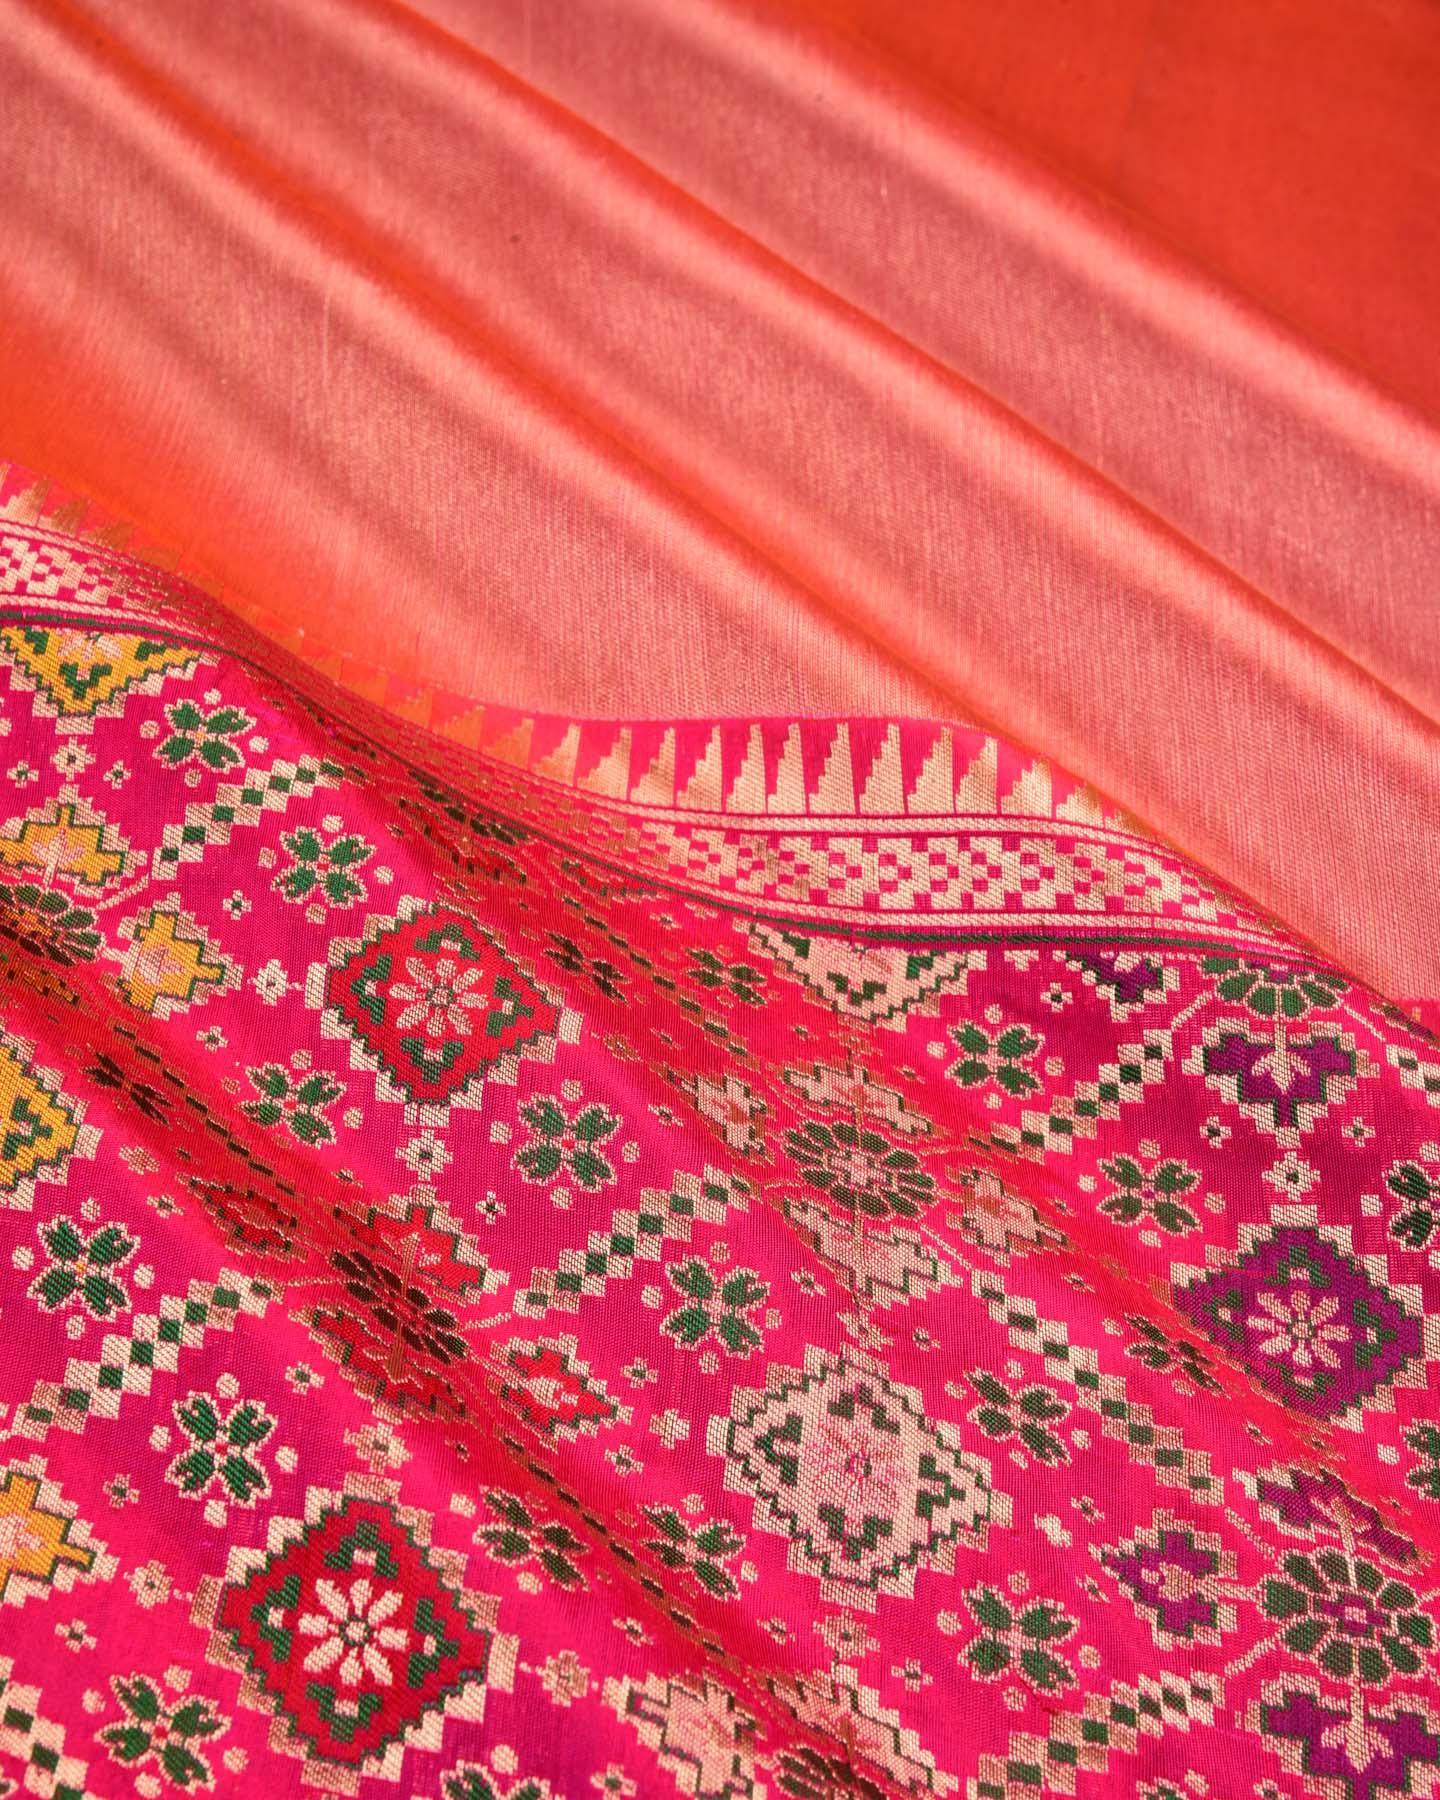 Metallic Red Banarasi Patola Cutwork Brocade Handwoven Katan Tissue Saree - By HolyWeaves, Benares